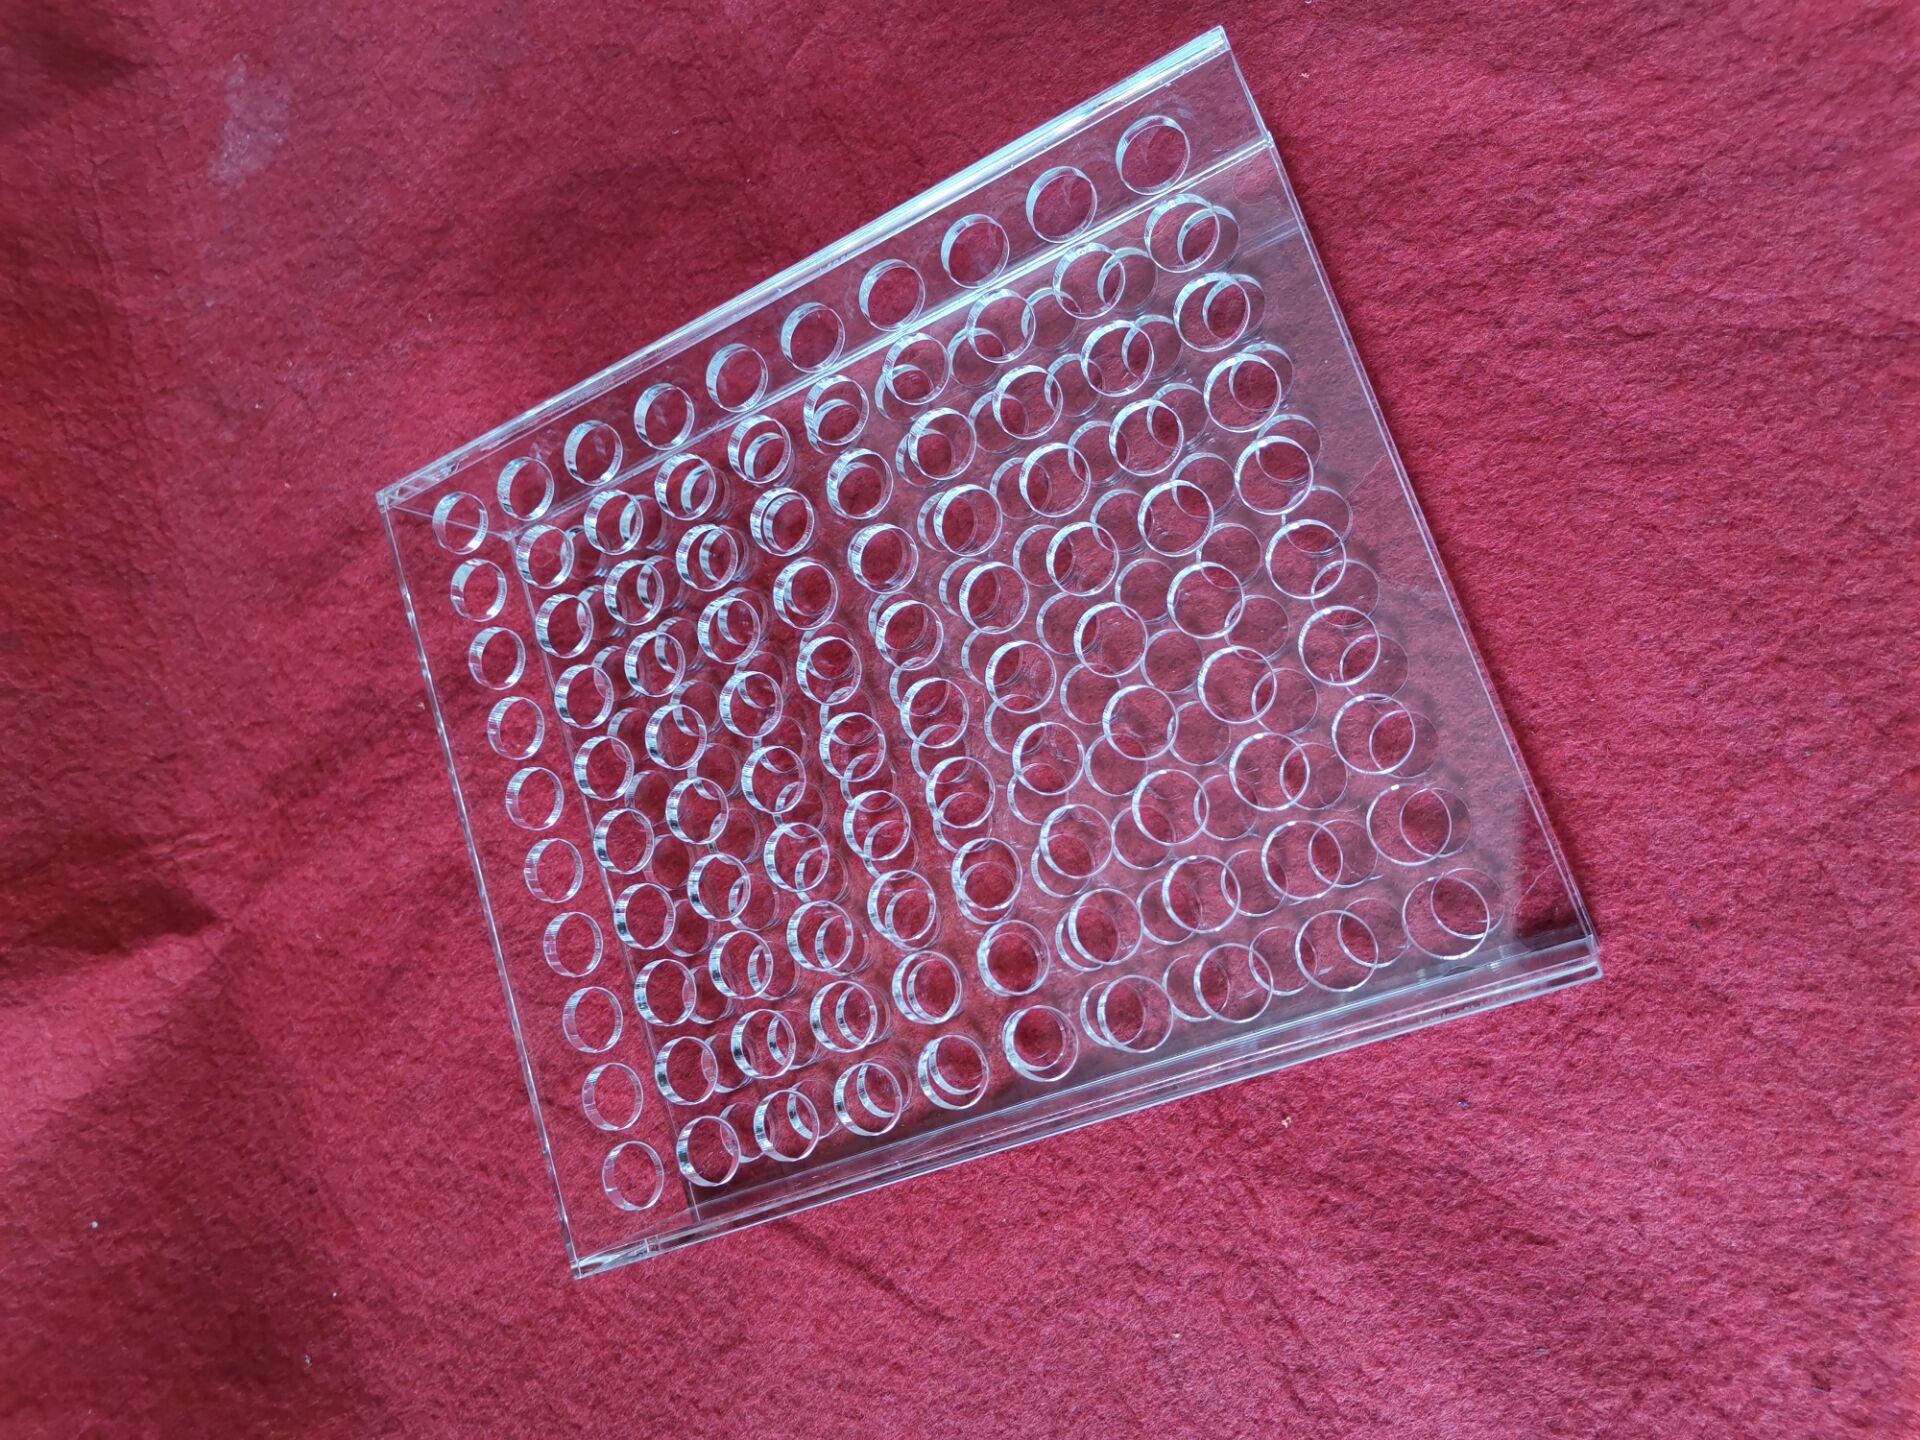 宁波安君定制加工亚克力有机玻璃塑料制品双层化妆工具展示架 100孔试管架图片